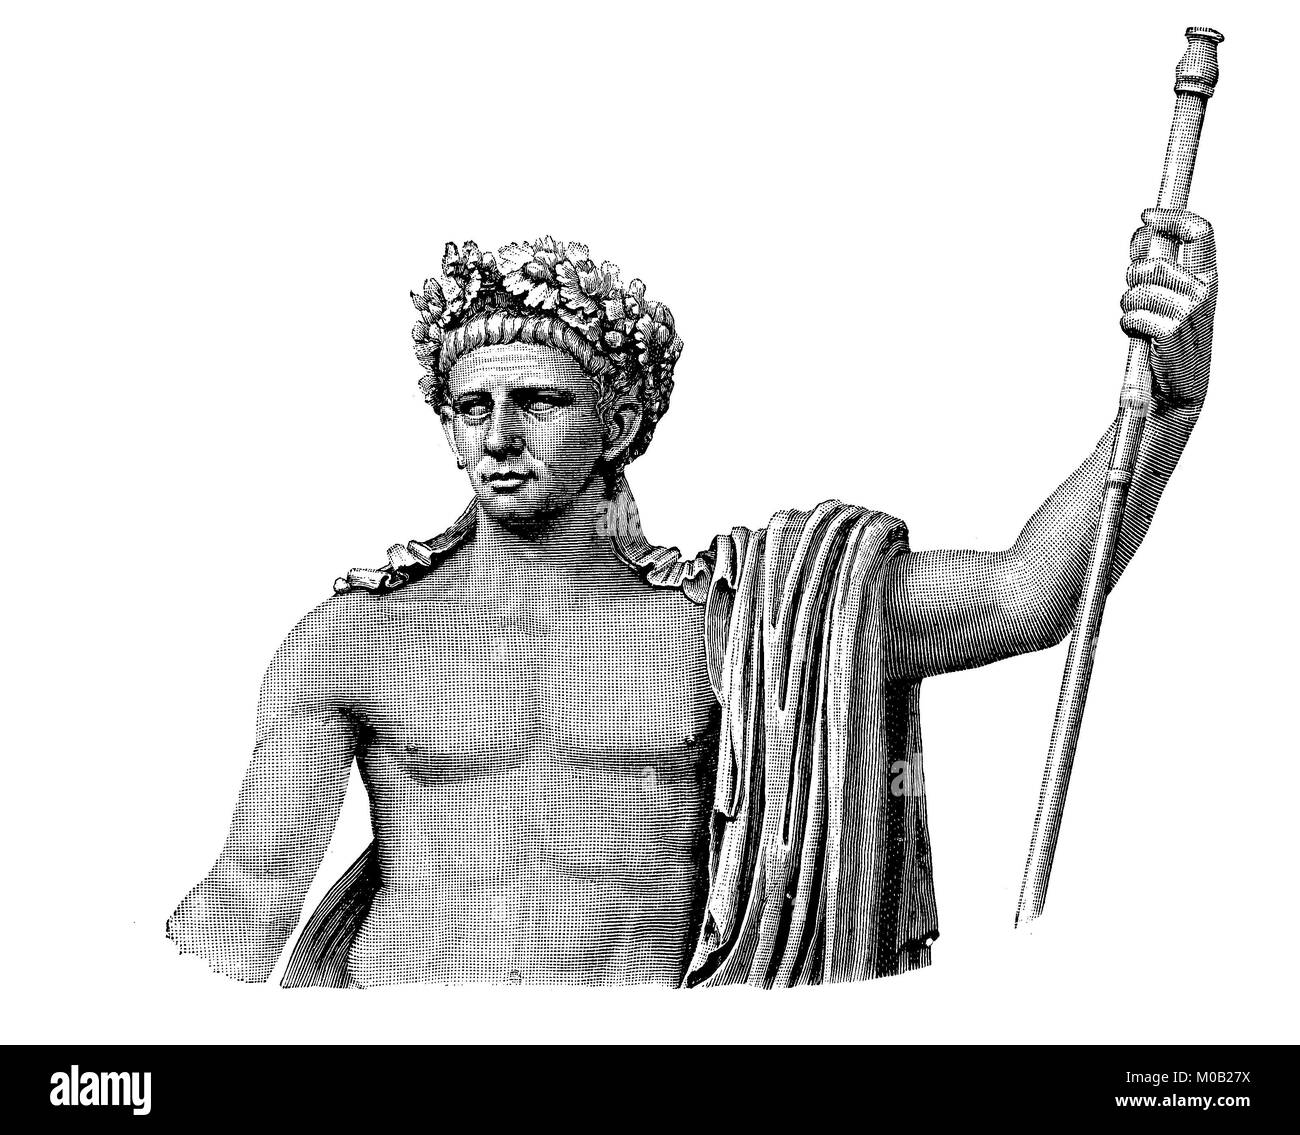 Der Siegeszug der Statue von Claudius in den Vatikanischen Museen in Rom, Italien, Tiberius Claudius Caesar Augustus Germanicus, 1. August 10 v. Chr. - 13. Oktober, 54 AD, war der vierte Römische Kaiser der Patrizier, digital verbesserte Reproduktion einer Vorlage drucken von 1880 Stockfoto